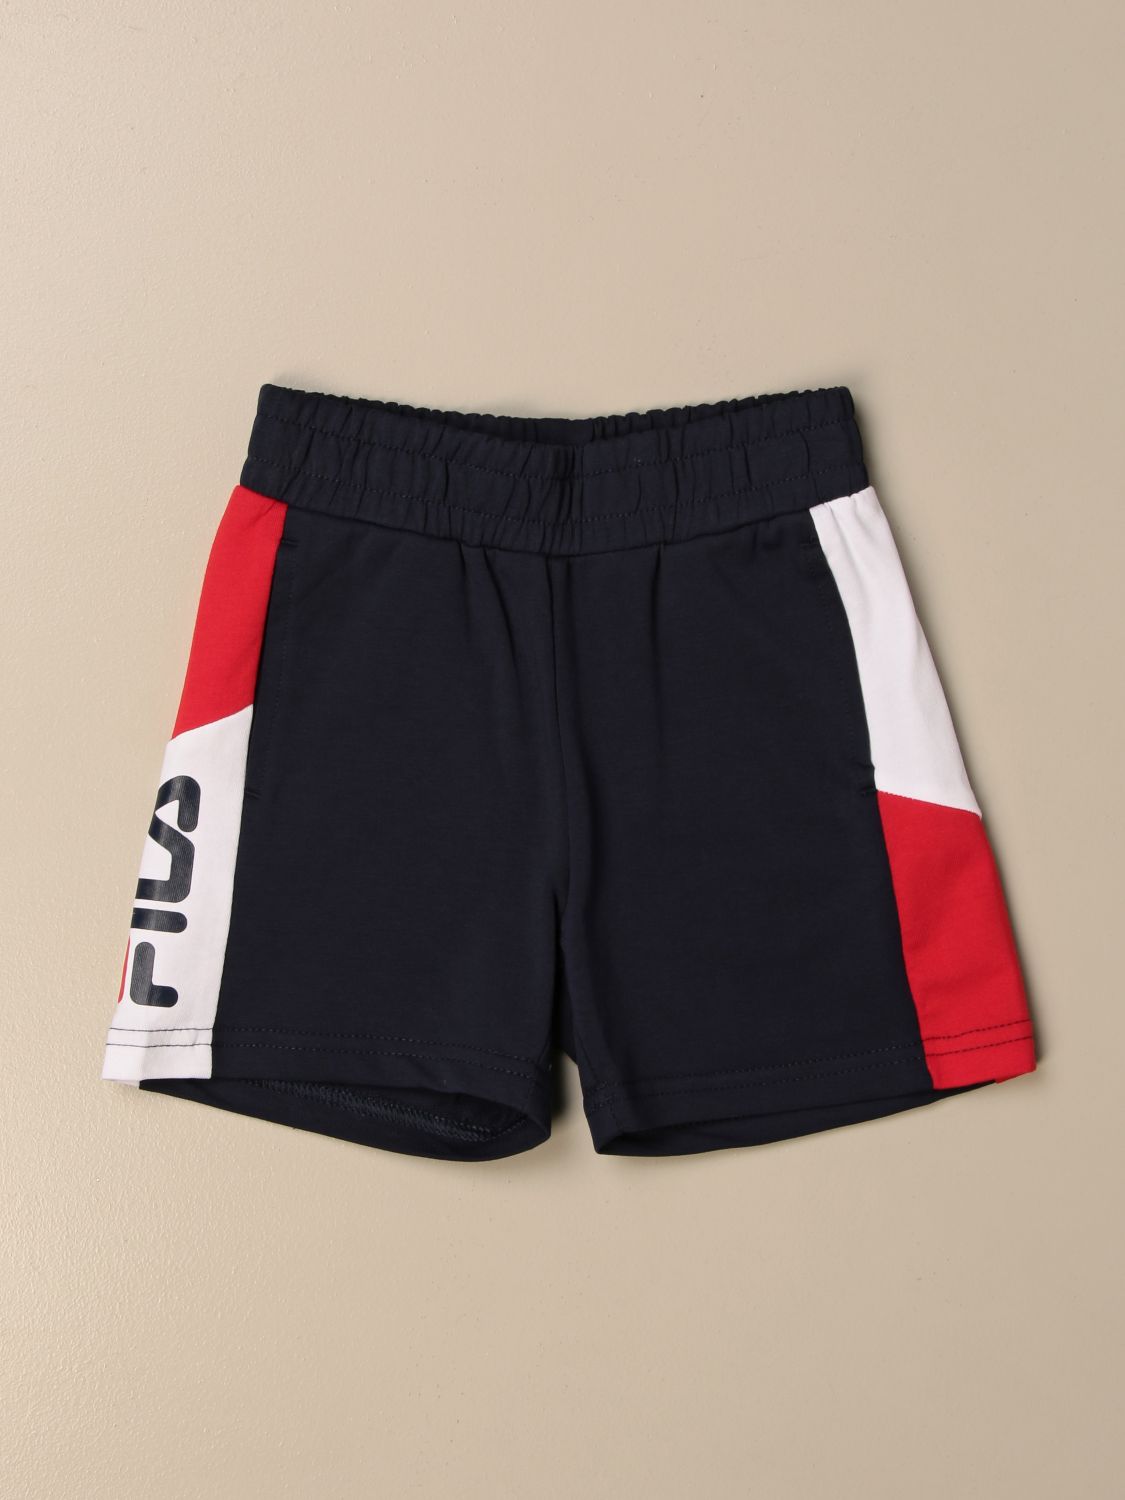 at klemme smeltet Trække ud FILA: jogging shorts with bands - Blue | Fila shorts 688652 online at  GIGLIO.COM